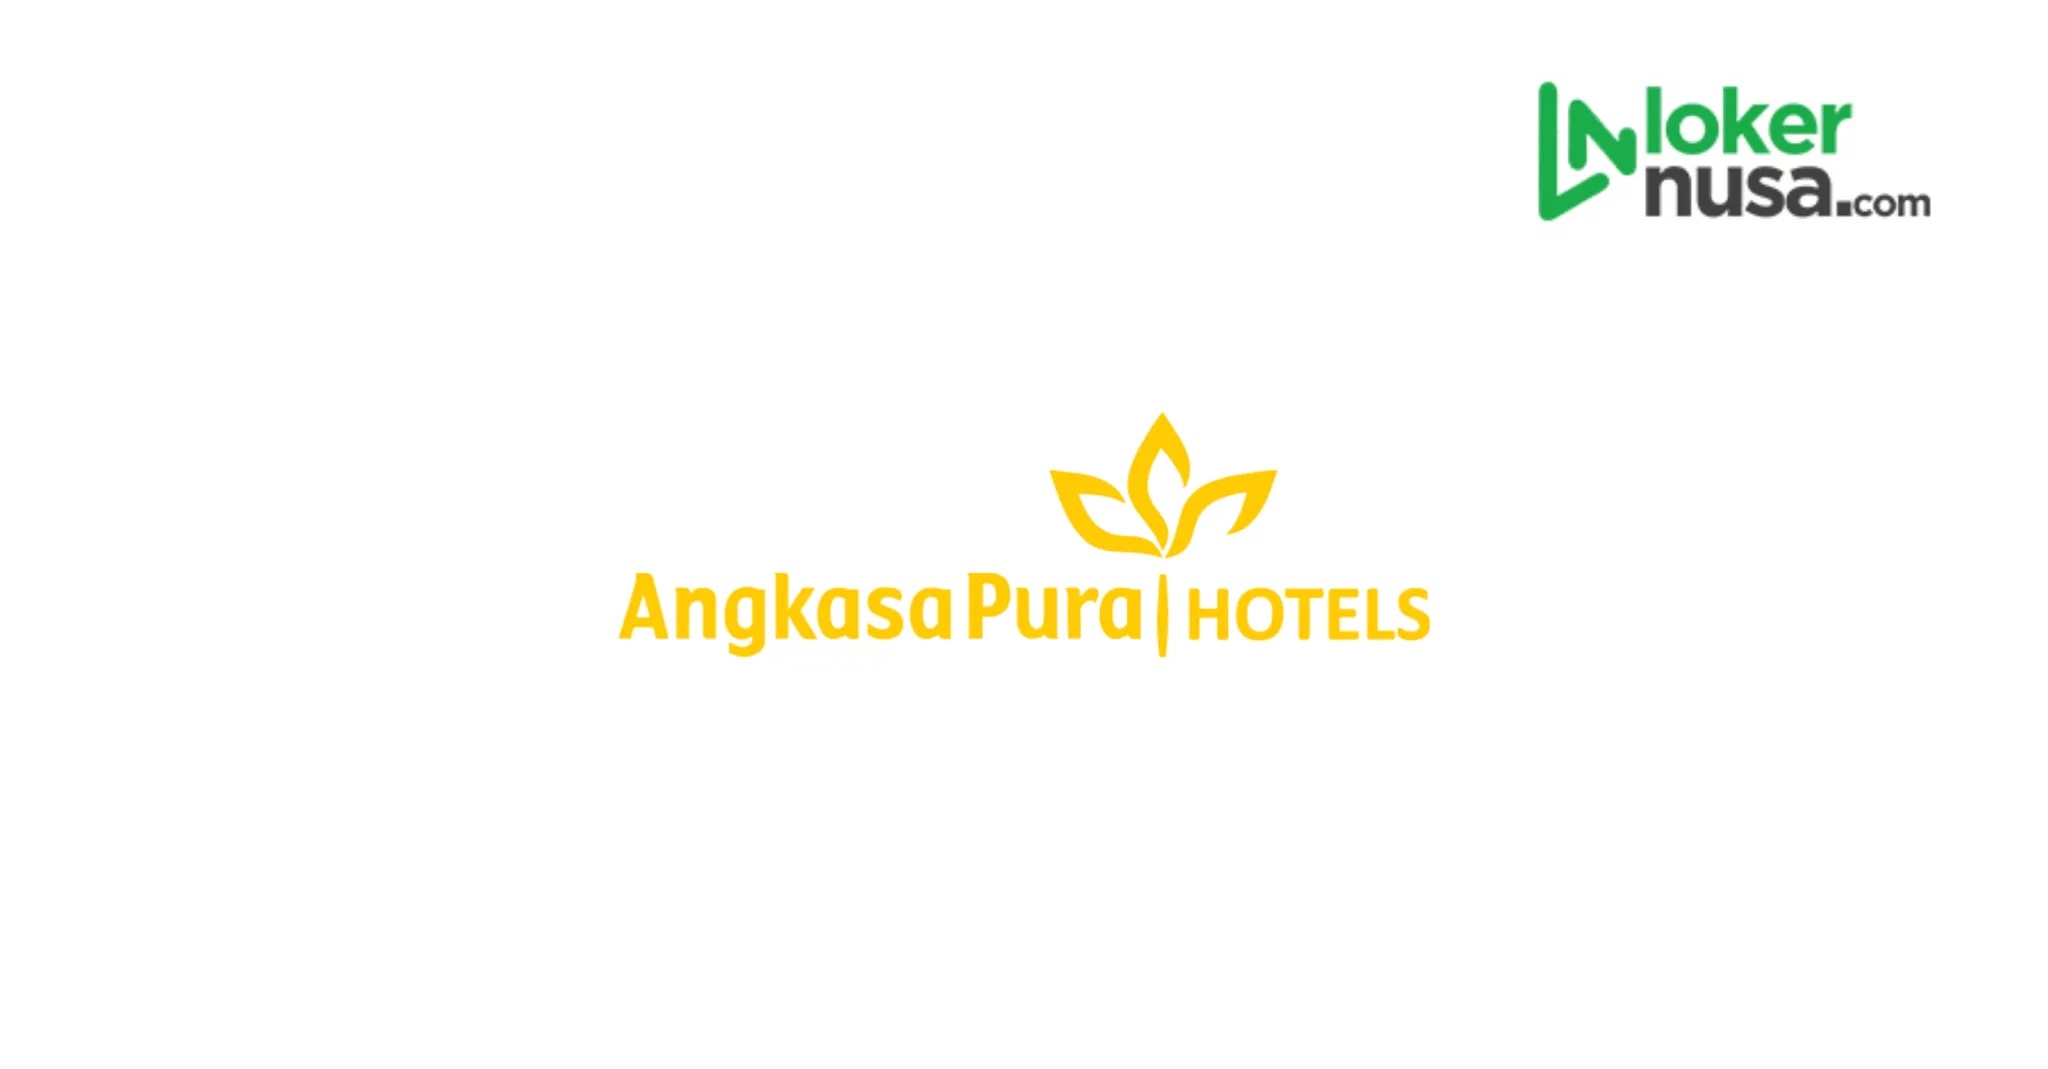 Angkasa Pura Hotel